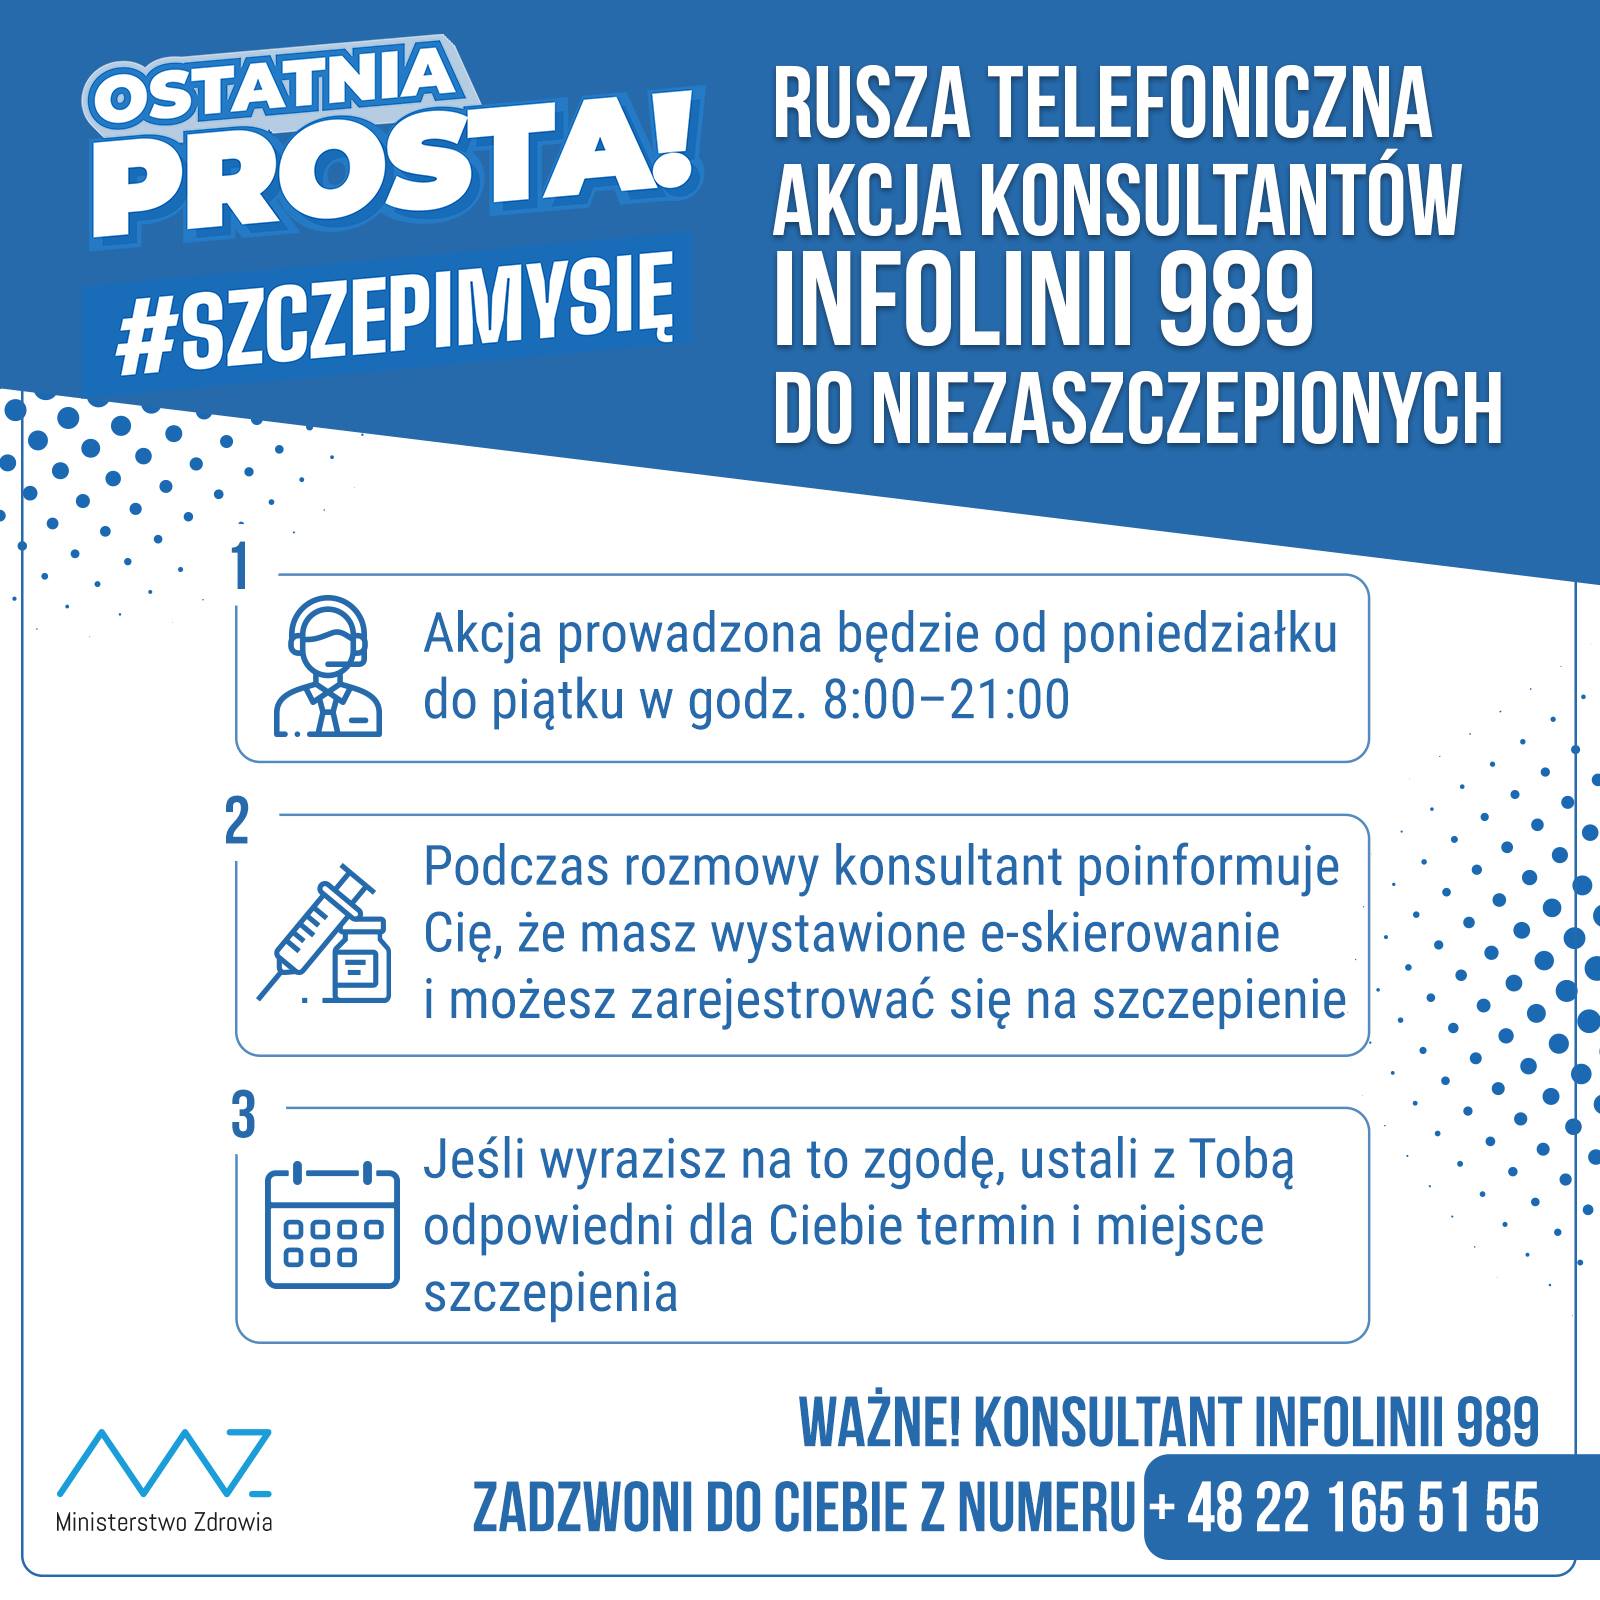 Rusza telefoniczna akcja konsultantów Infolinii 989 do niezaszczepionych